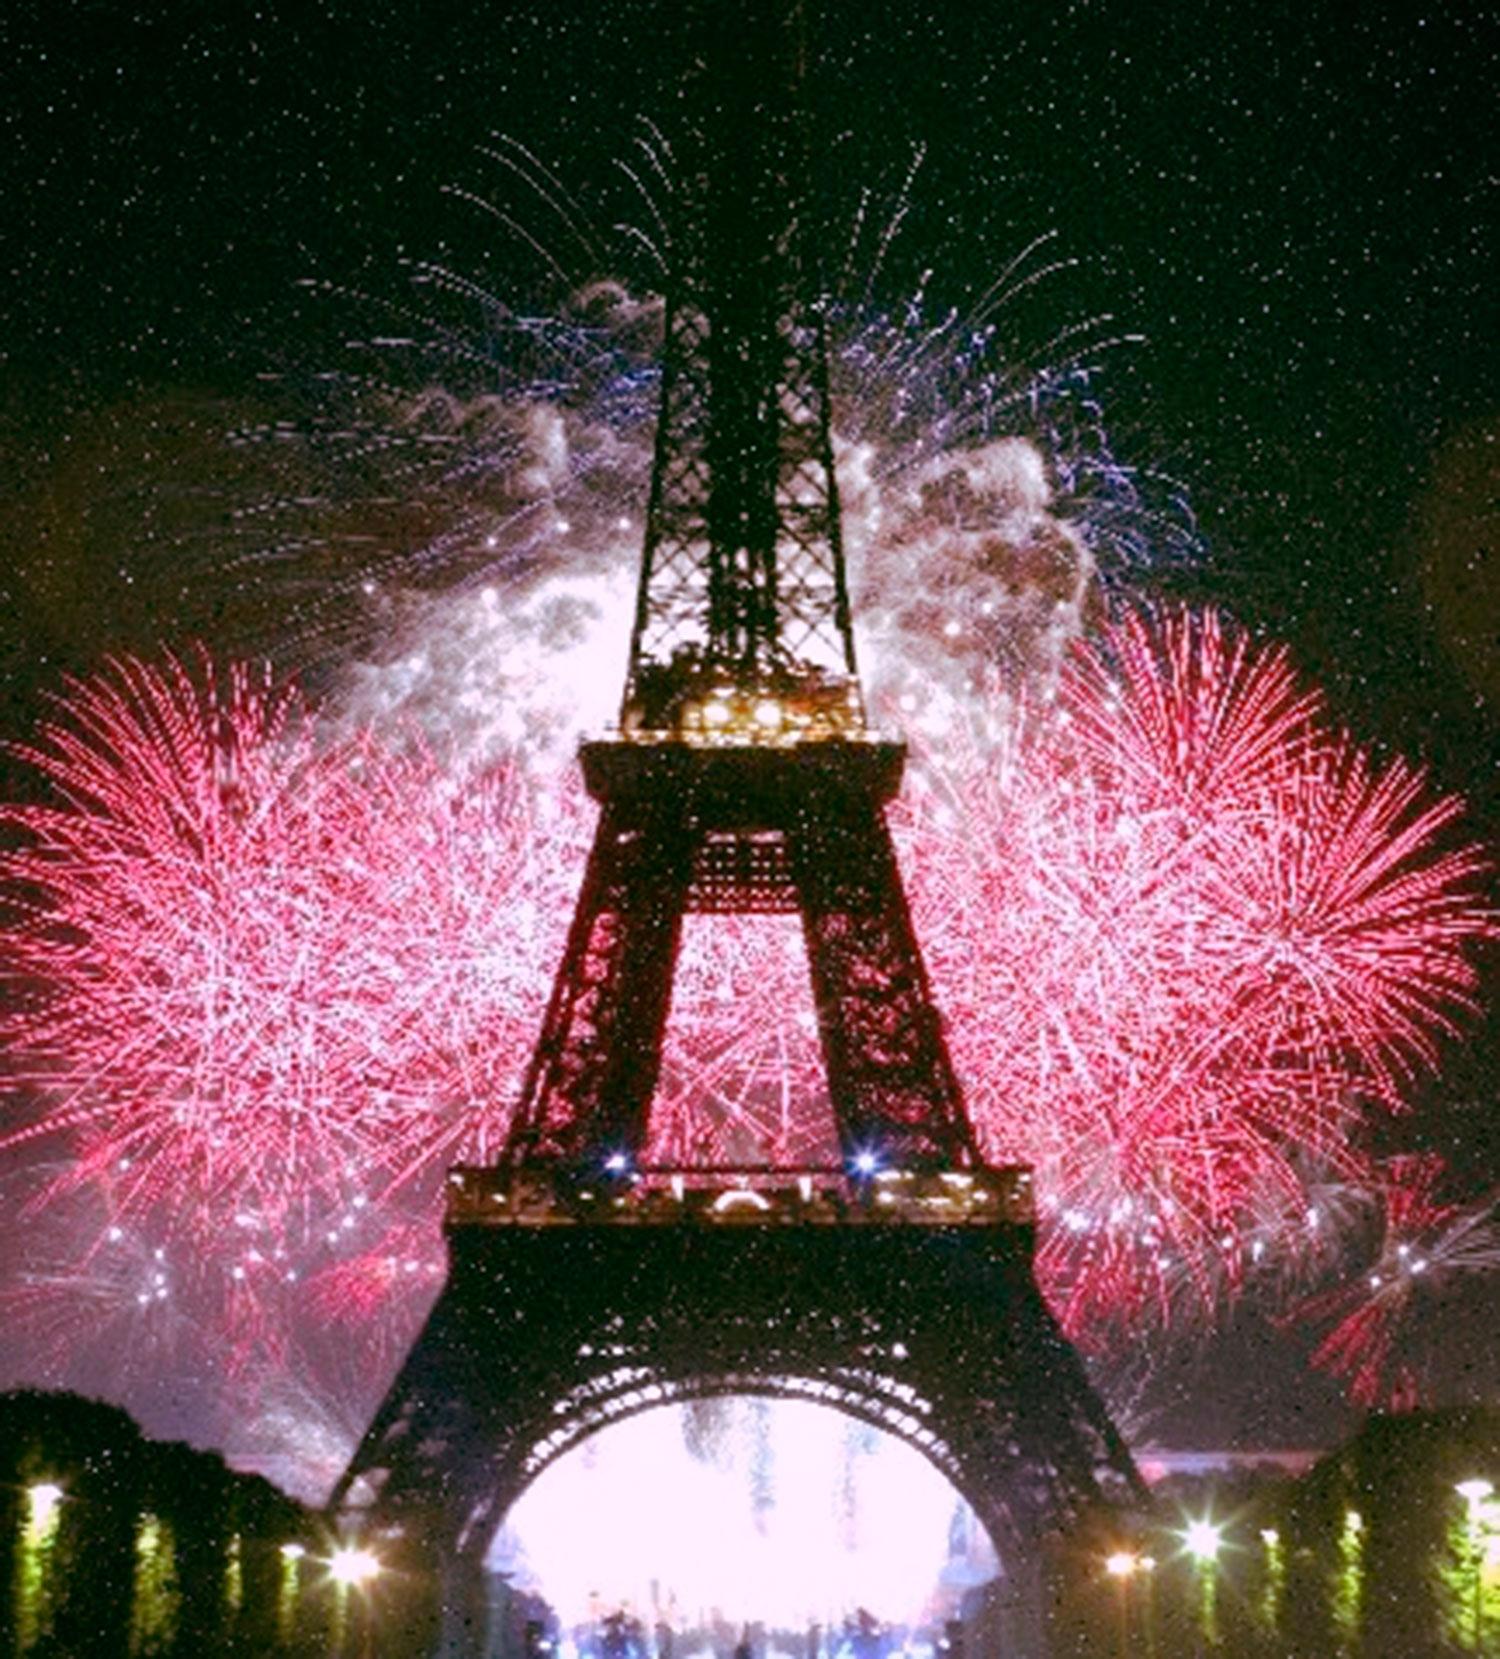 Mer romantiskt än nyår i Paris blir det knappast.